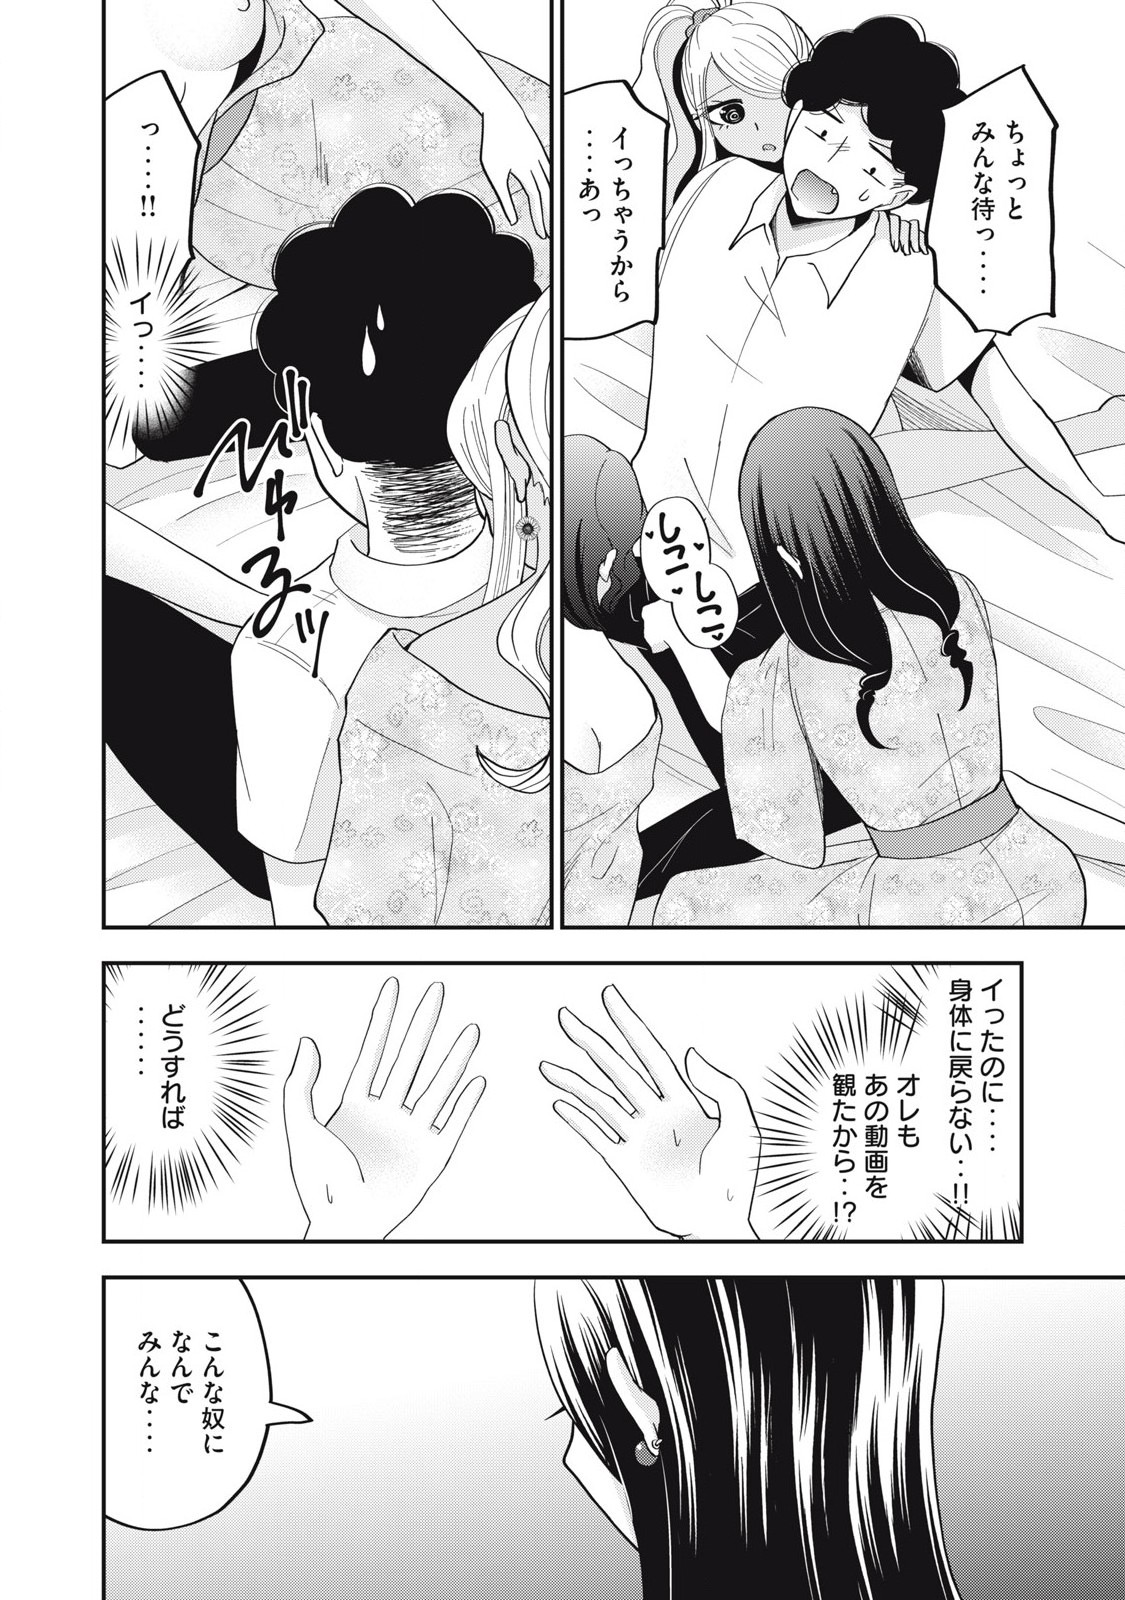 Yumeutsutsu no Hana no Sono - Chapter 29 - Page 10